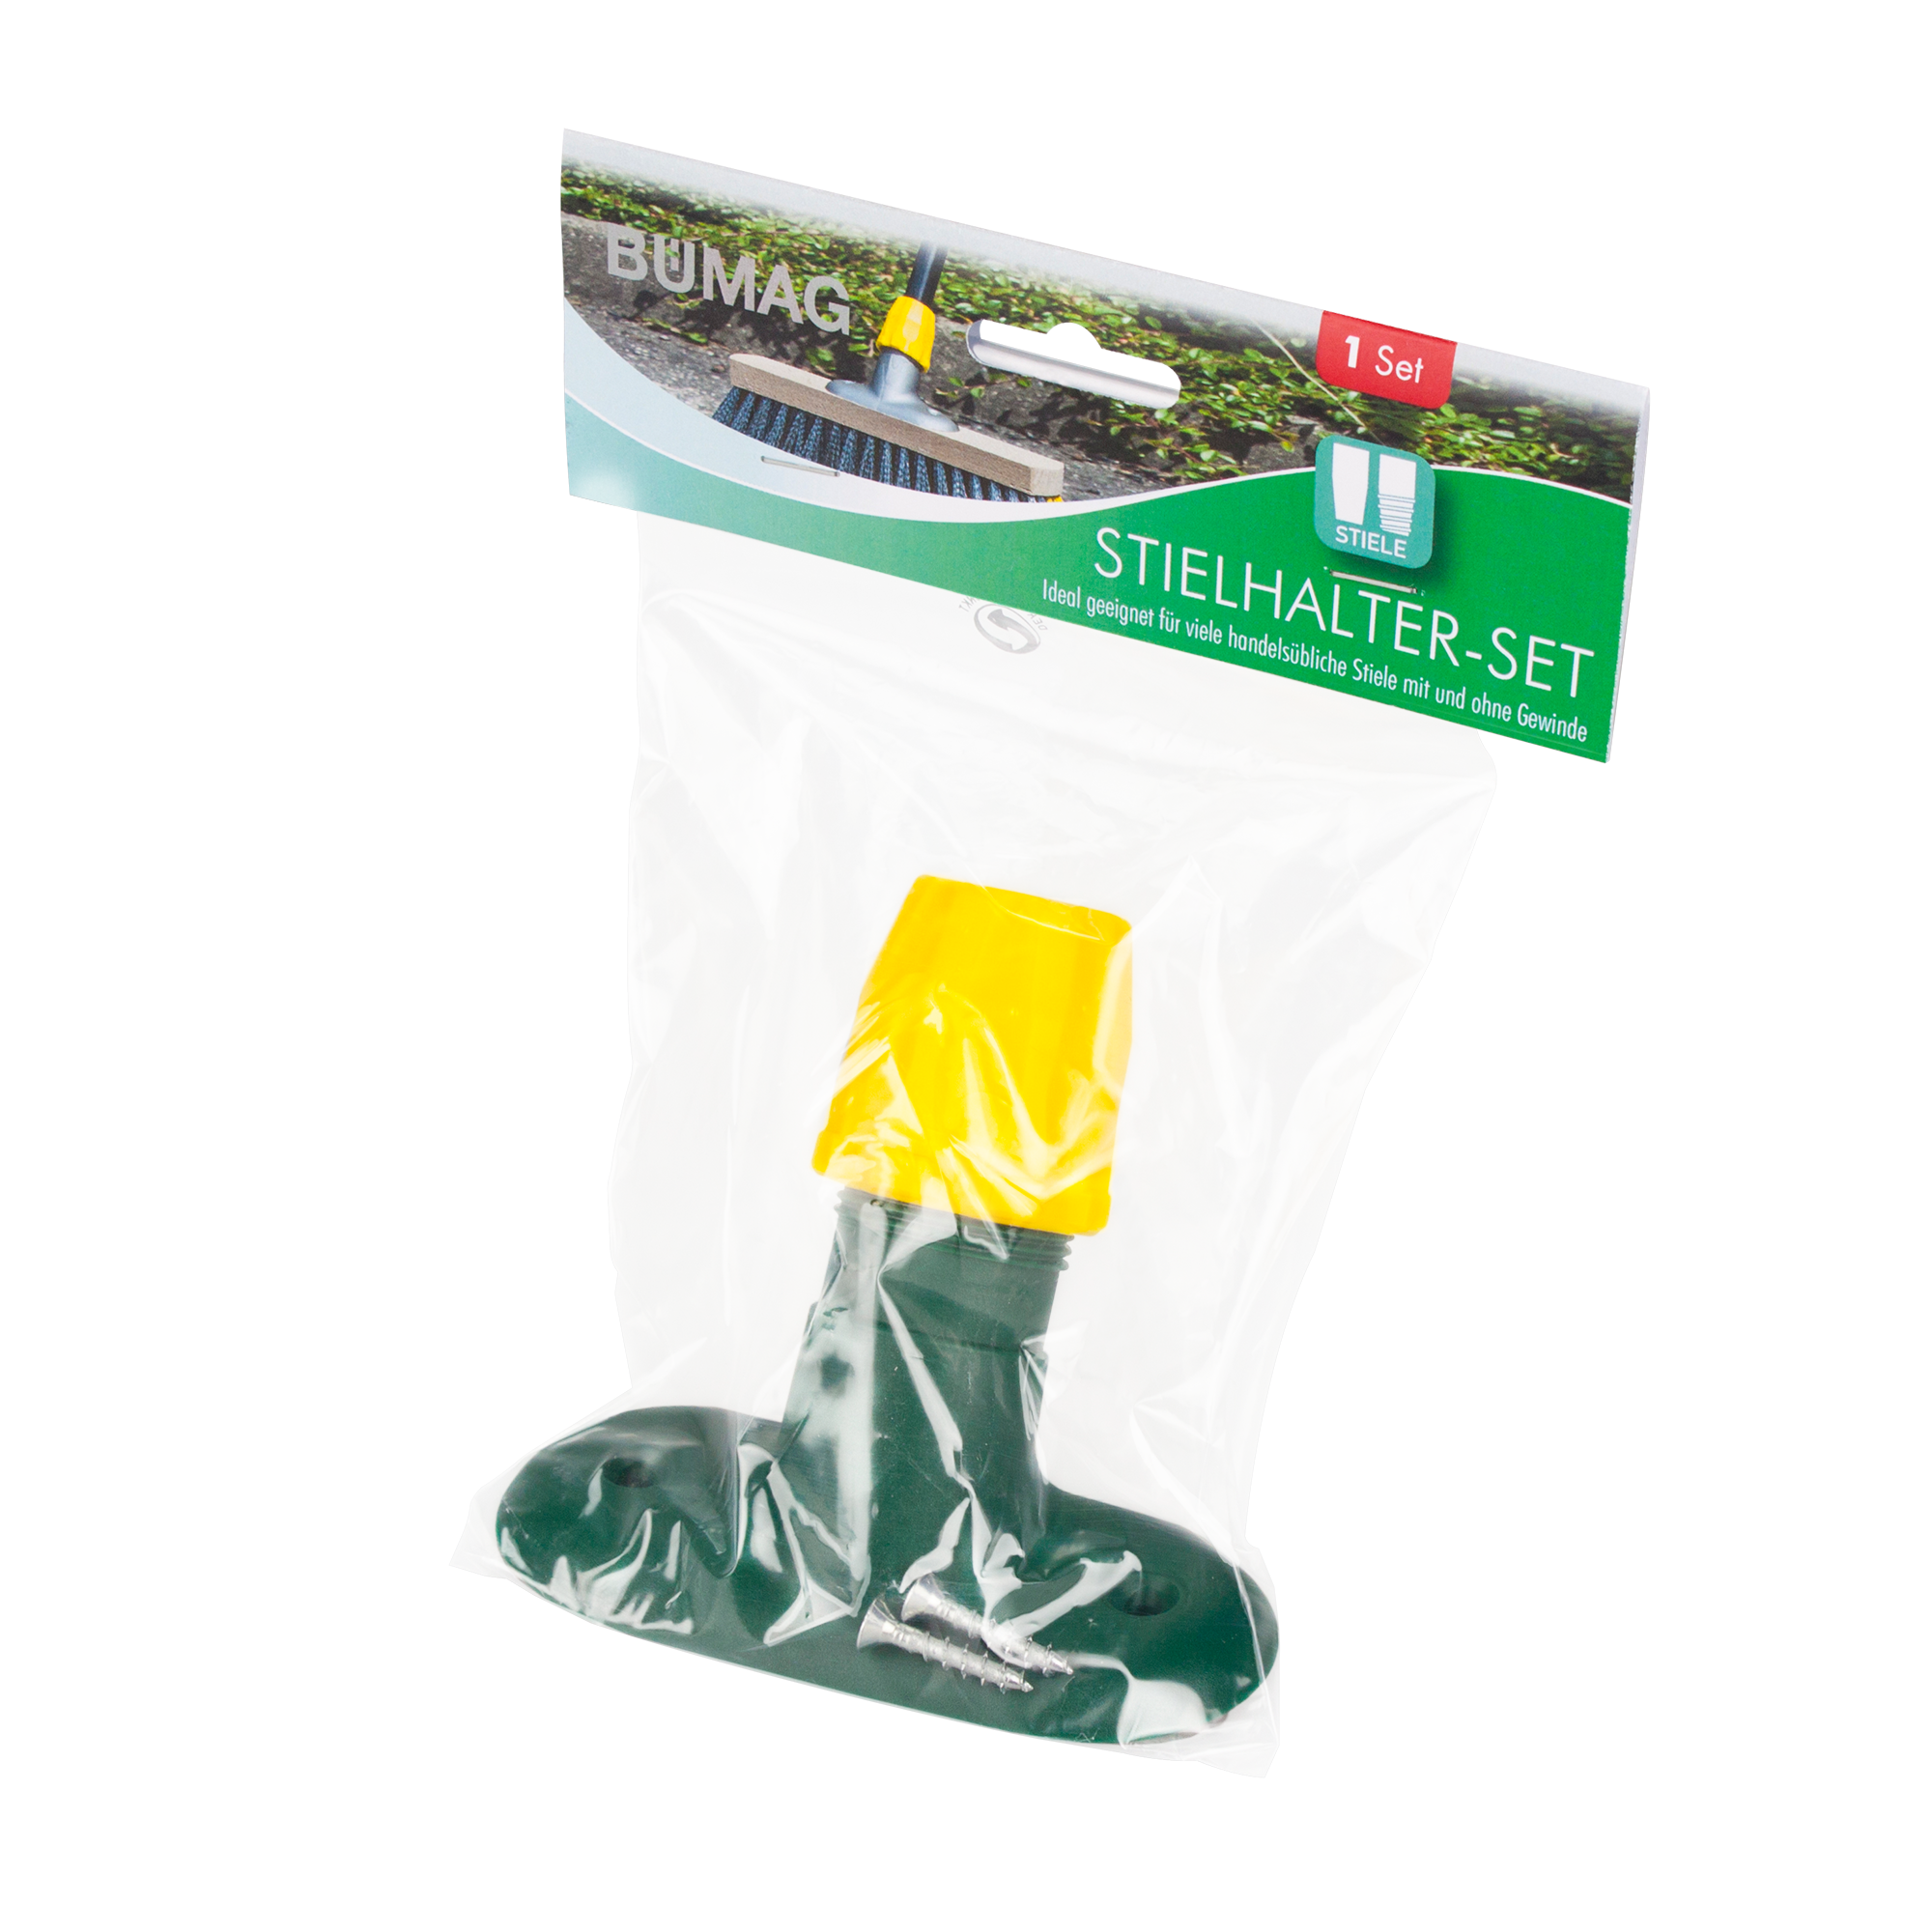 Kunststoffstielhalter mit Überwurfmutter und 2 Ersatzschrauben grün + product picture